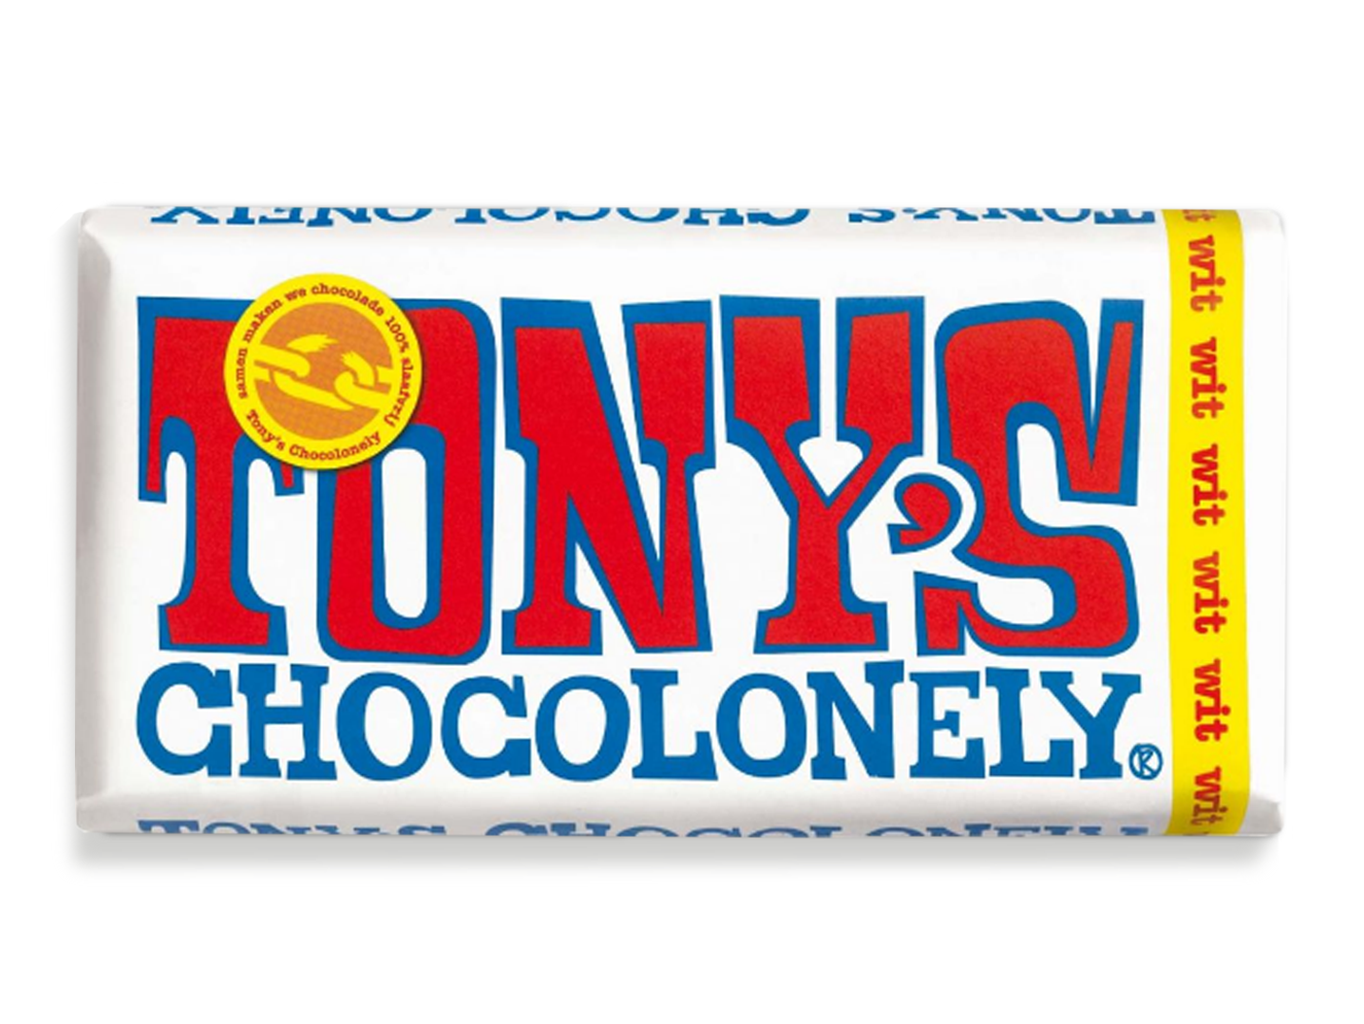 Tony’s Chocolonely – bílá čokoláda, 180 gramů